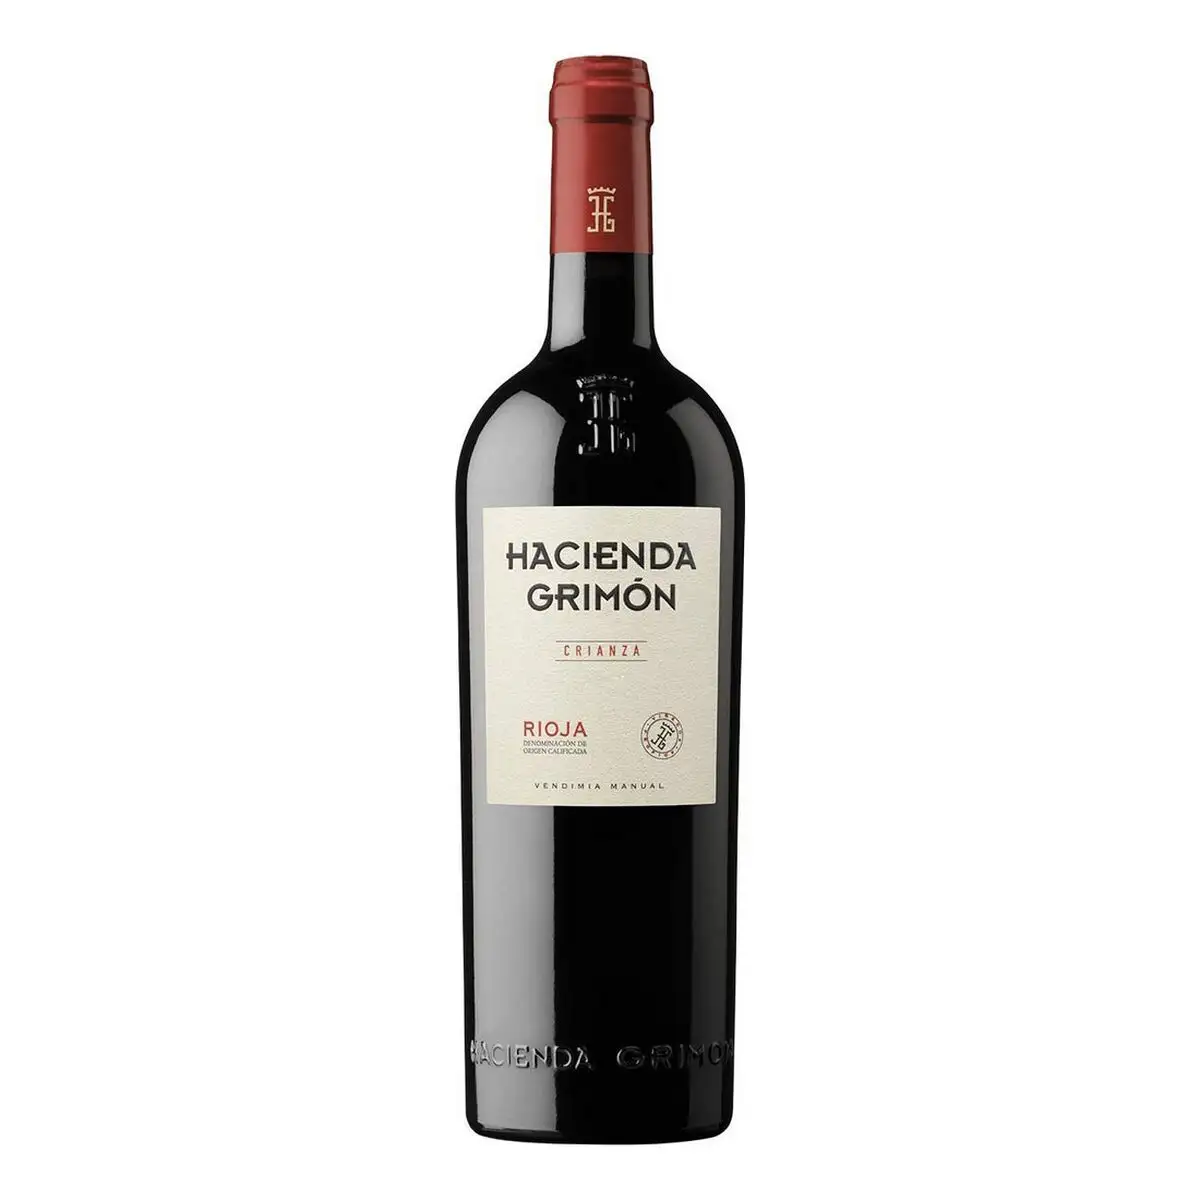 Vin rouge hacienda grimon crianza rioja vintage 75 cl _6125. DIAYTAR SENEGAL - Là où le Shopping Devient une Expérience. Naviguez à travers notre catalogue diversifié et découvrez des produits qui ajoutent de la couleur et de la passion à votre vie.